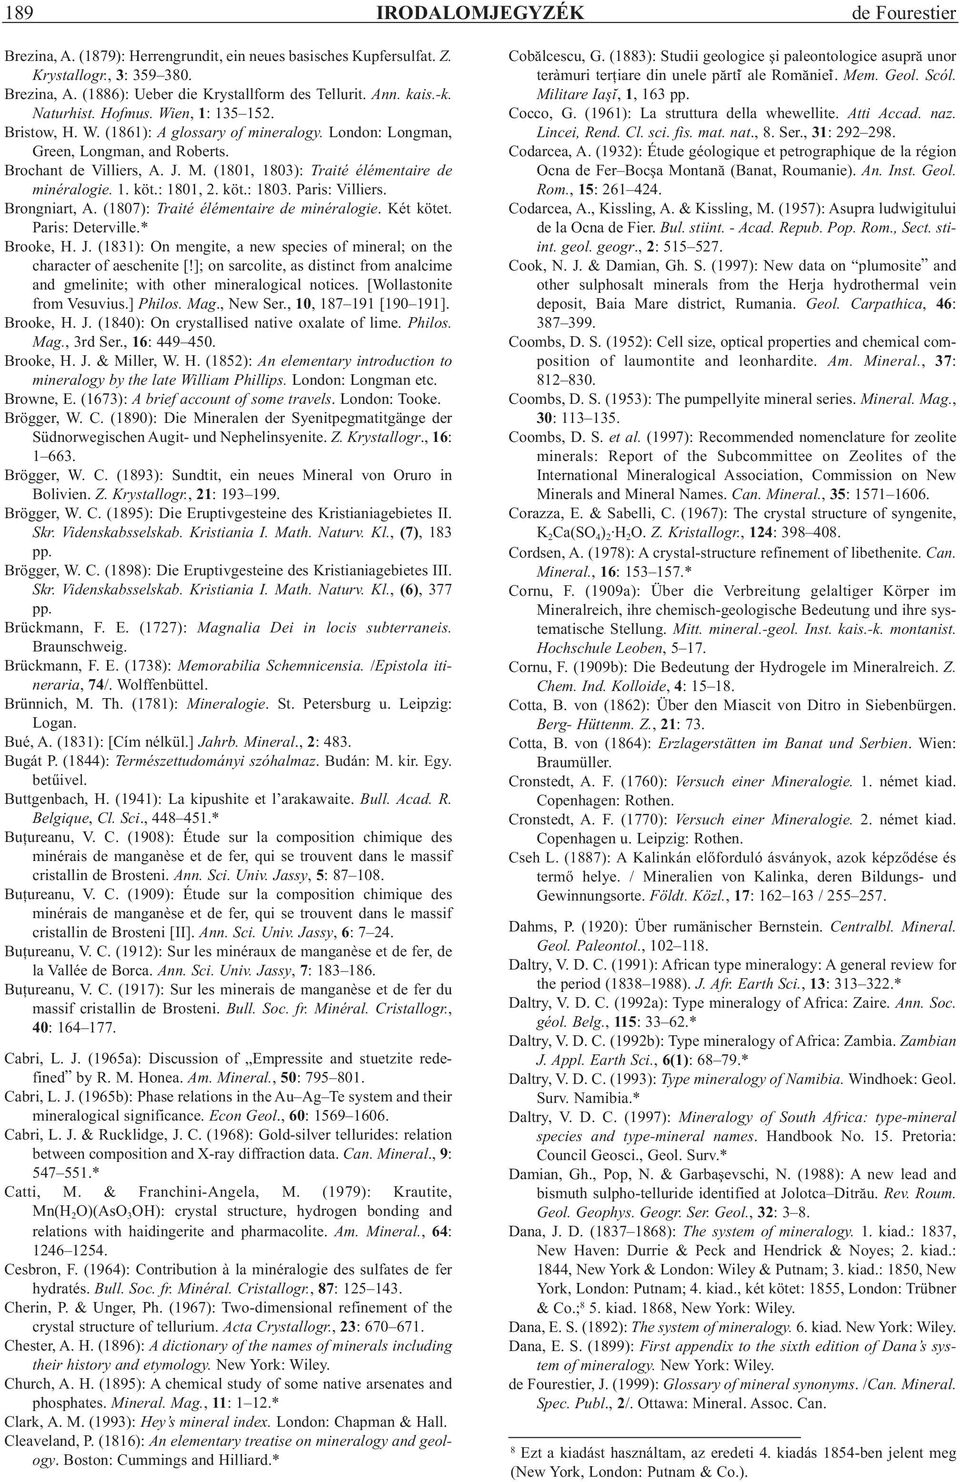 (1801, 1803): Traité élémentaire de minéralogie. 1. köt.: 1801, 2. köt.: 1803. Paris: Villiers. Brongniart, A. (1807): Traité élémentaire de minéralogie. Két kötet. Paris: Deterville.* Brooke, H. J.